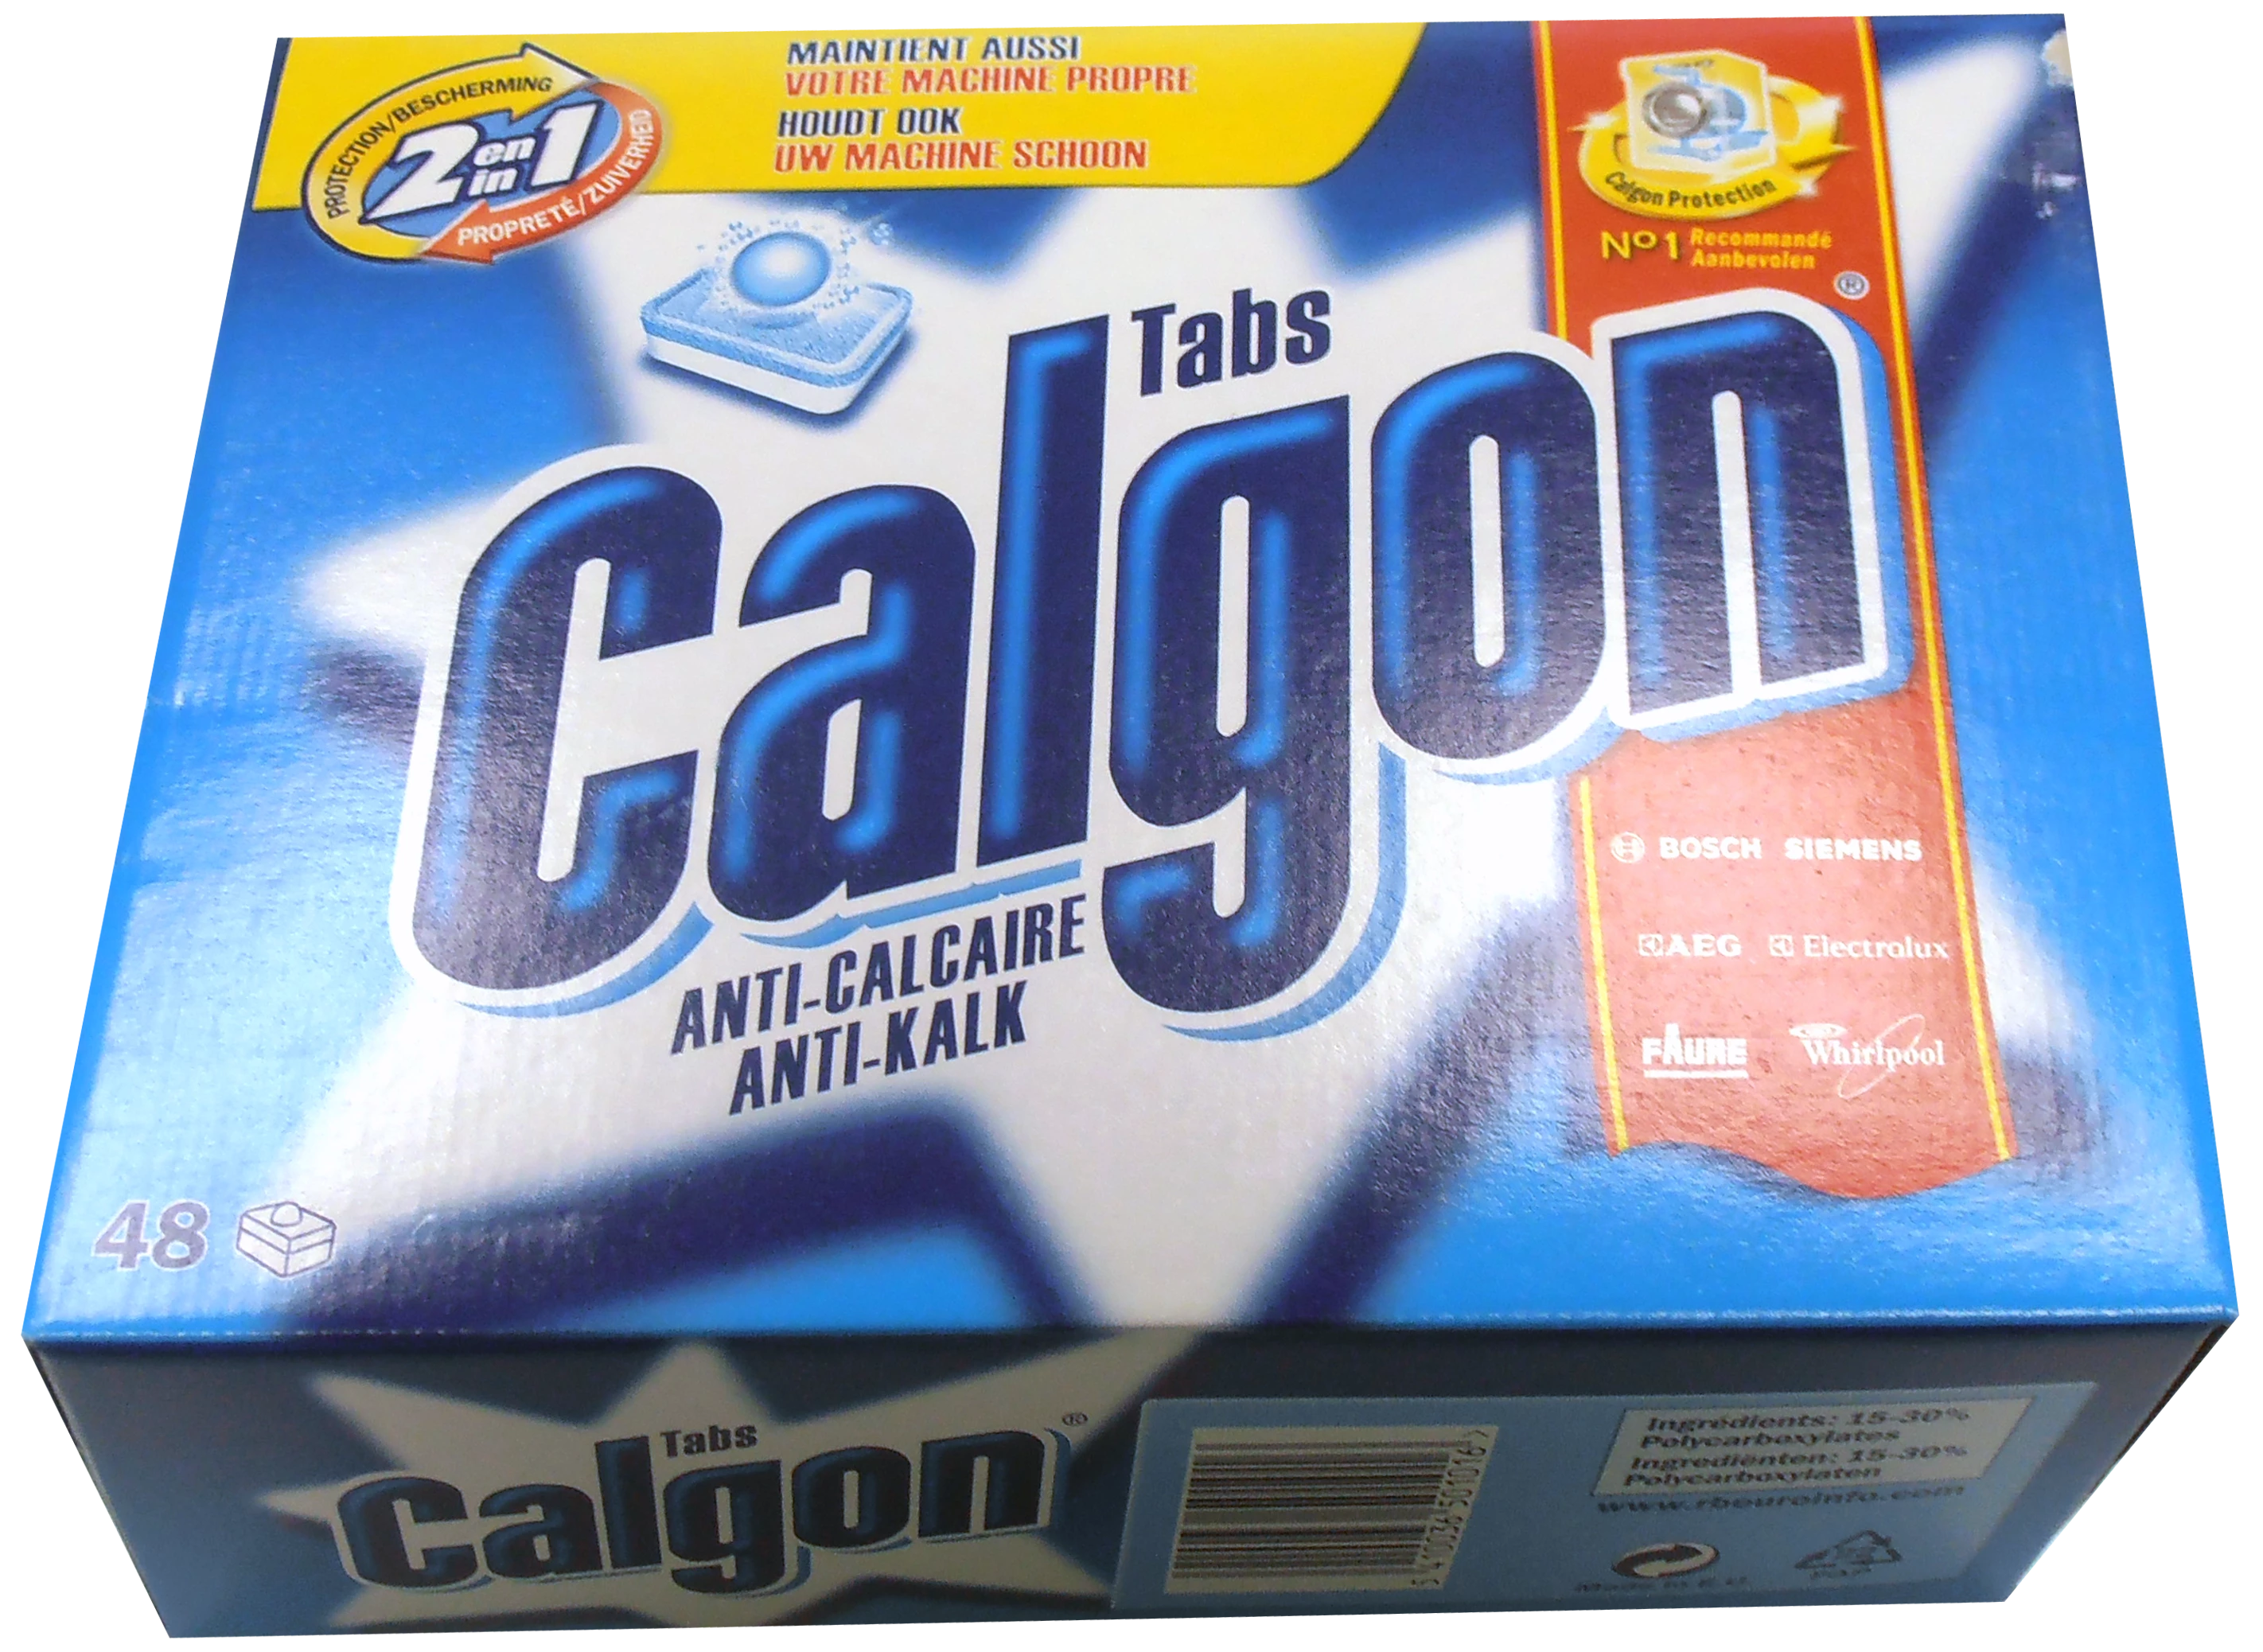 Calgon X48 Tabbladen 2en1 720g